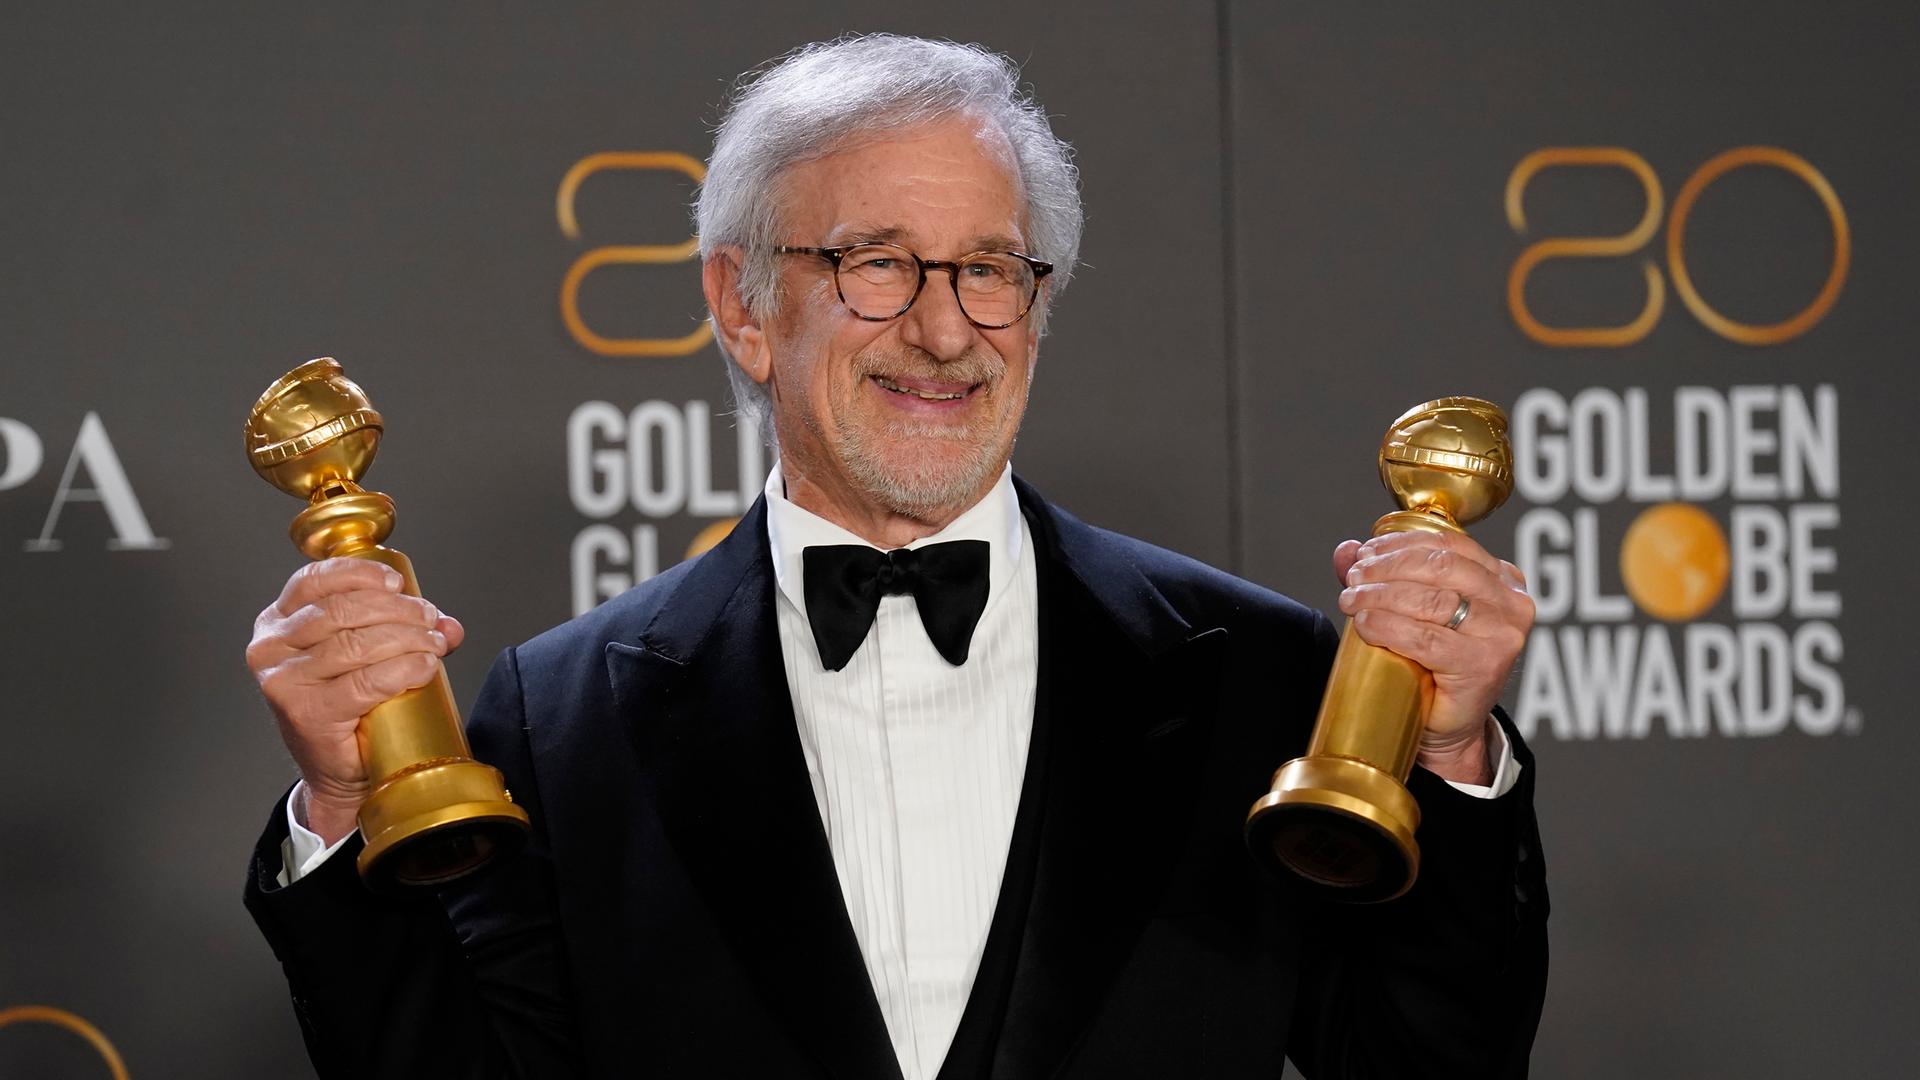 Steven Spielberg präsentiert zwei Golden Globes der Presse. Bei der Verleihung 2023 wurde sein Film "The Fabelmans" als bestes Drama ausgezeichnet, außerdem bekam er den Preis für die beste Regie.